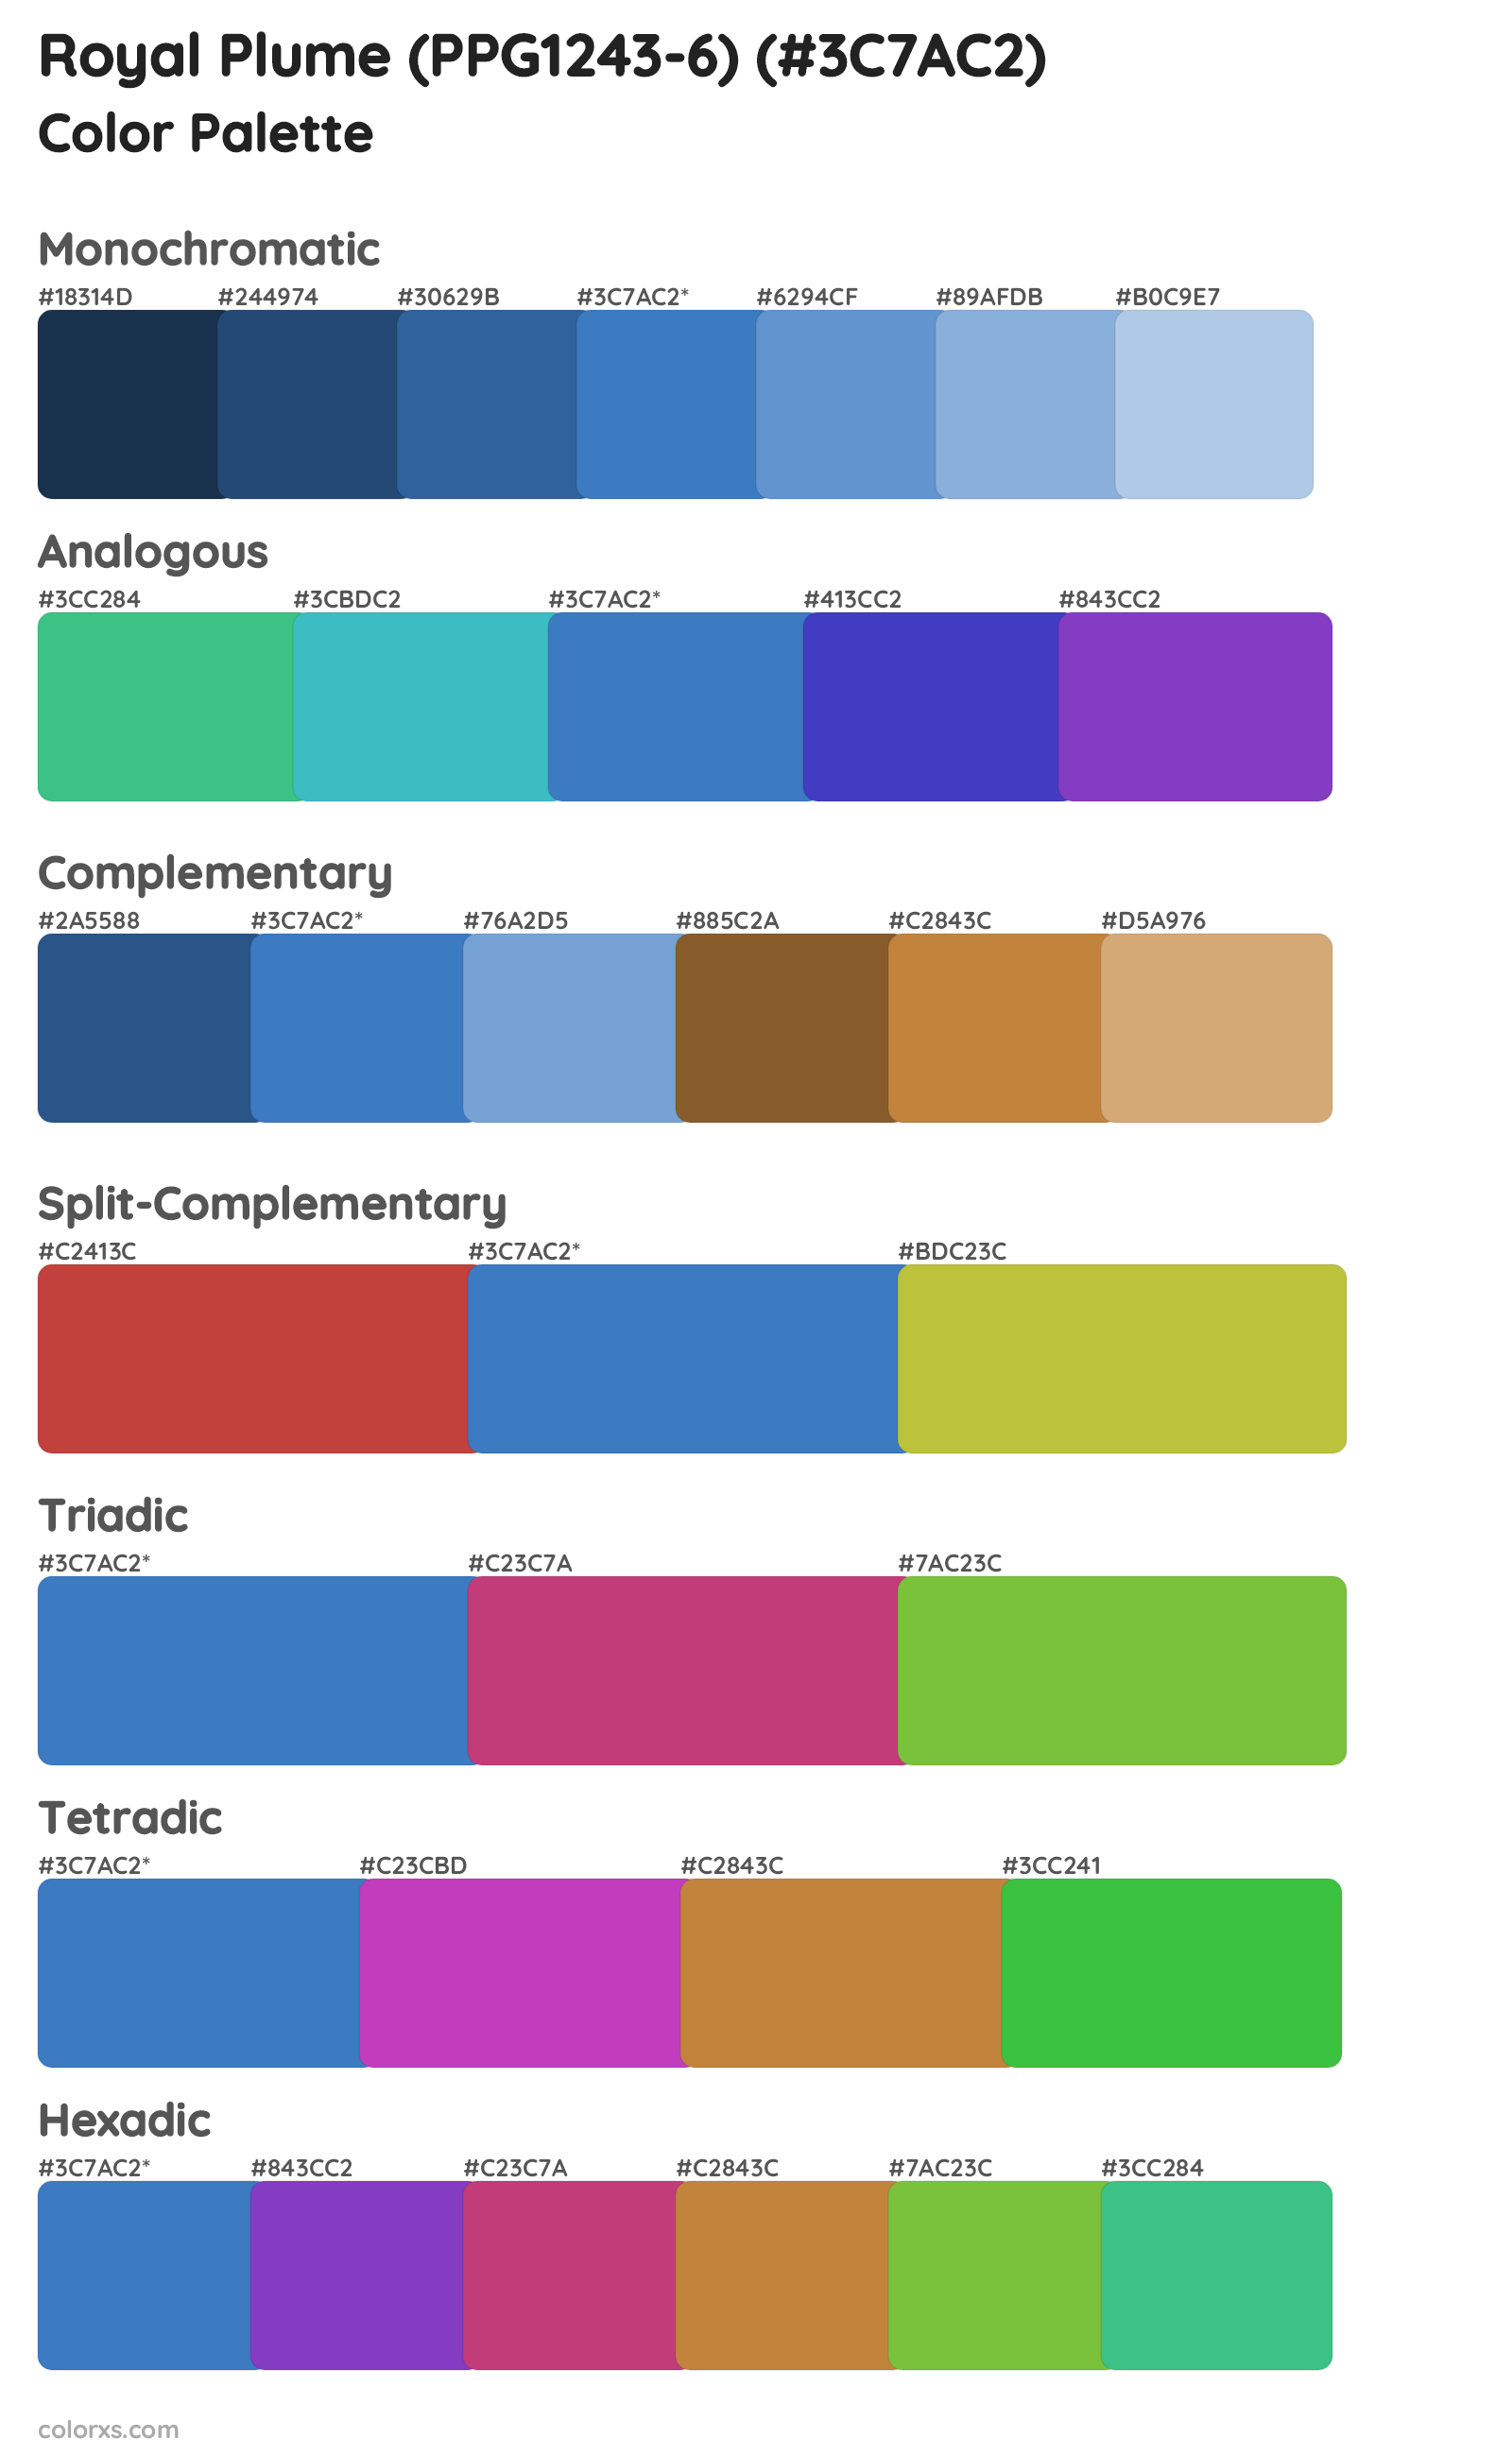 Royal Plume (PPG1243-6) Color Scheme Palettes